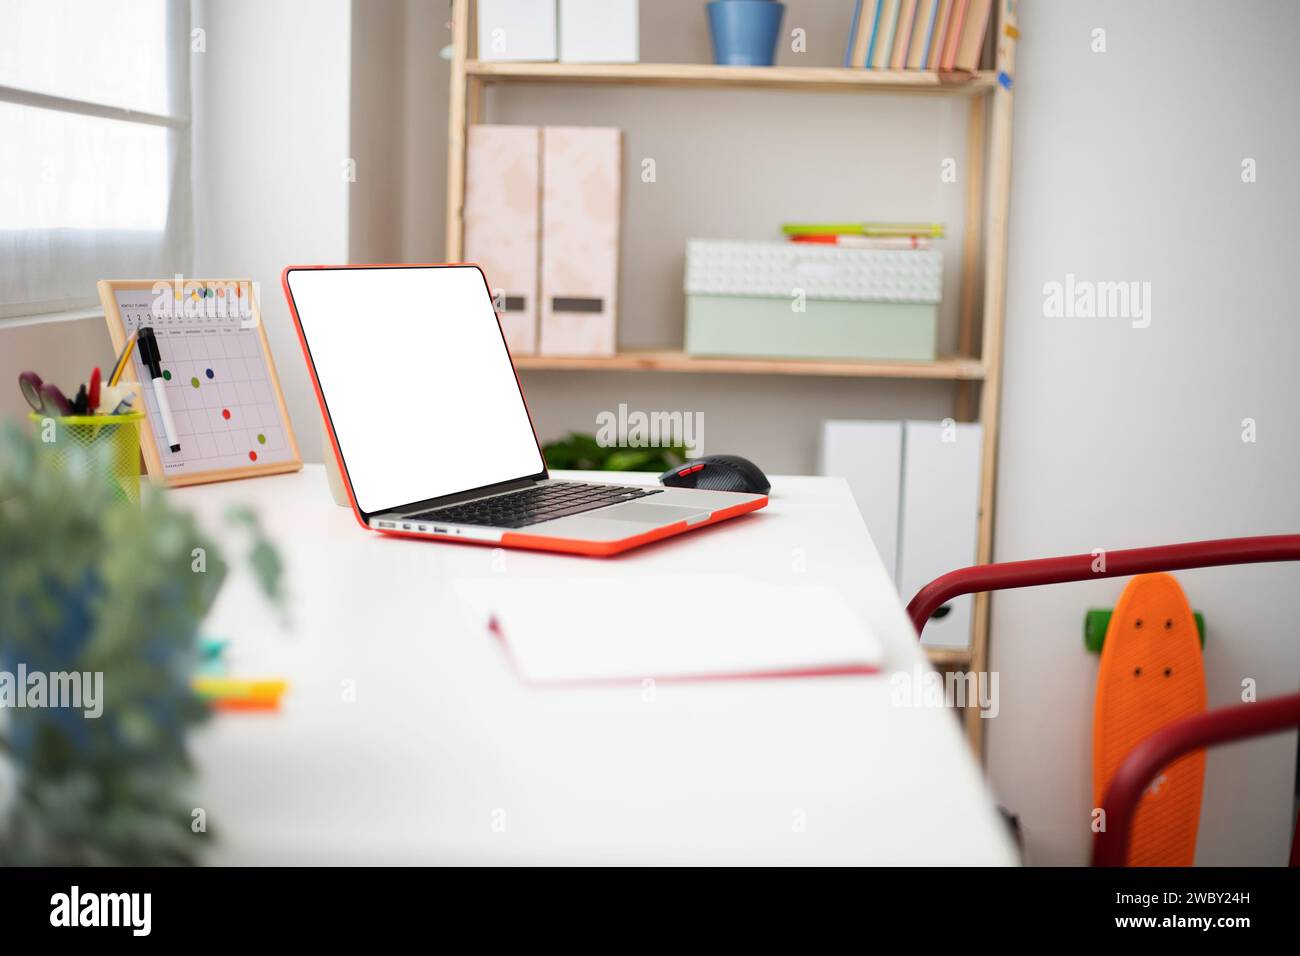 Laptop mit leerem Bildschirm auf dem Schülertisch in einem hellen Teenager-Zimmer Stockfoto